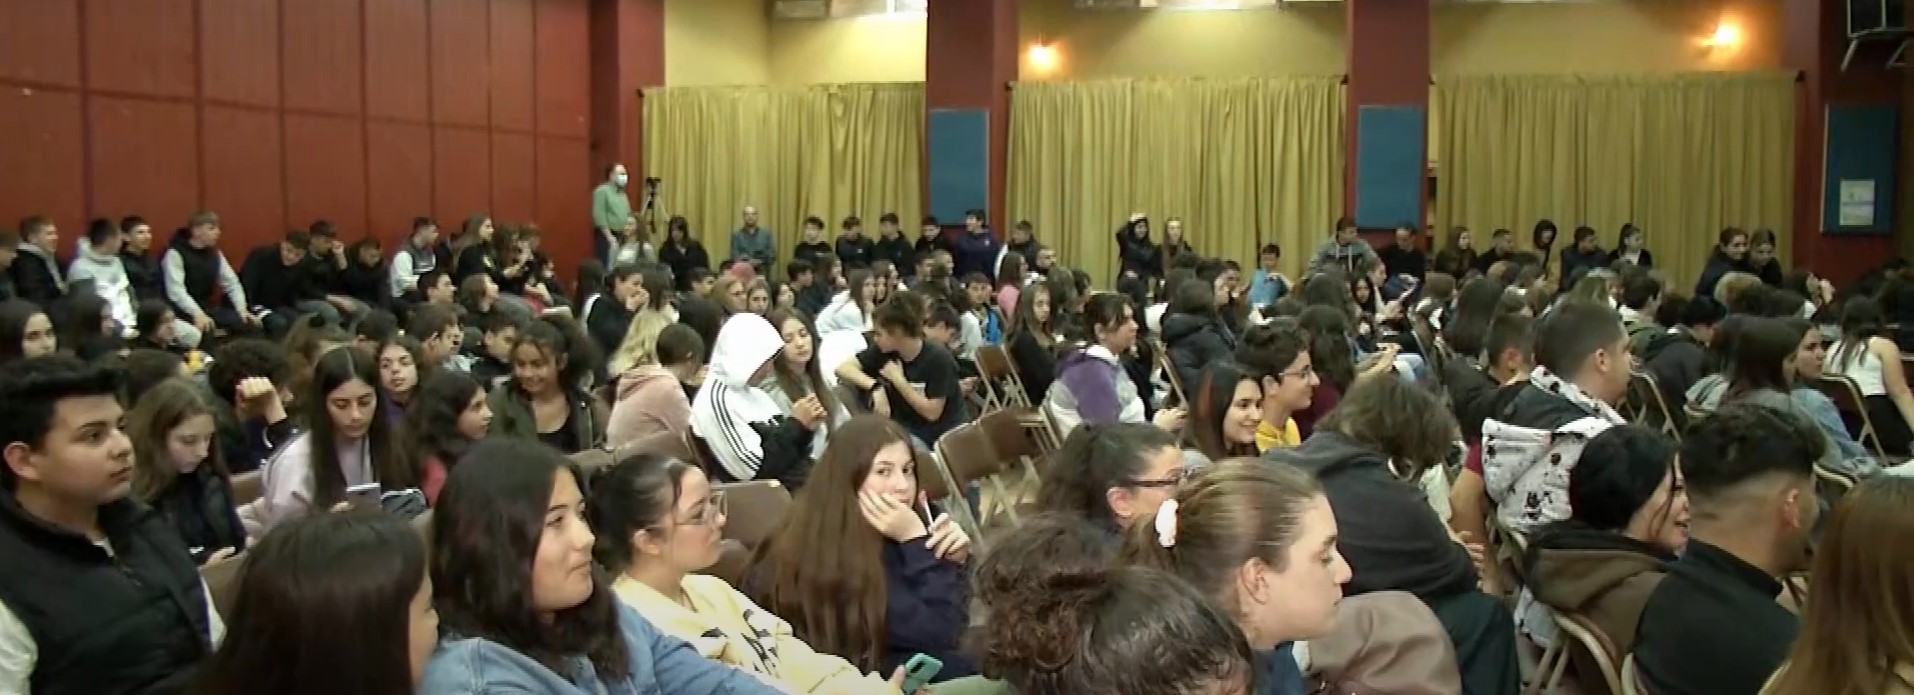 Θεσσαλονίκη: Μαθητικό συνέδριο για την ασφάλεια στα σχολεία